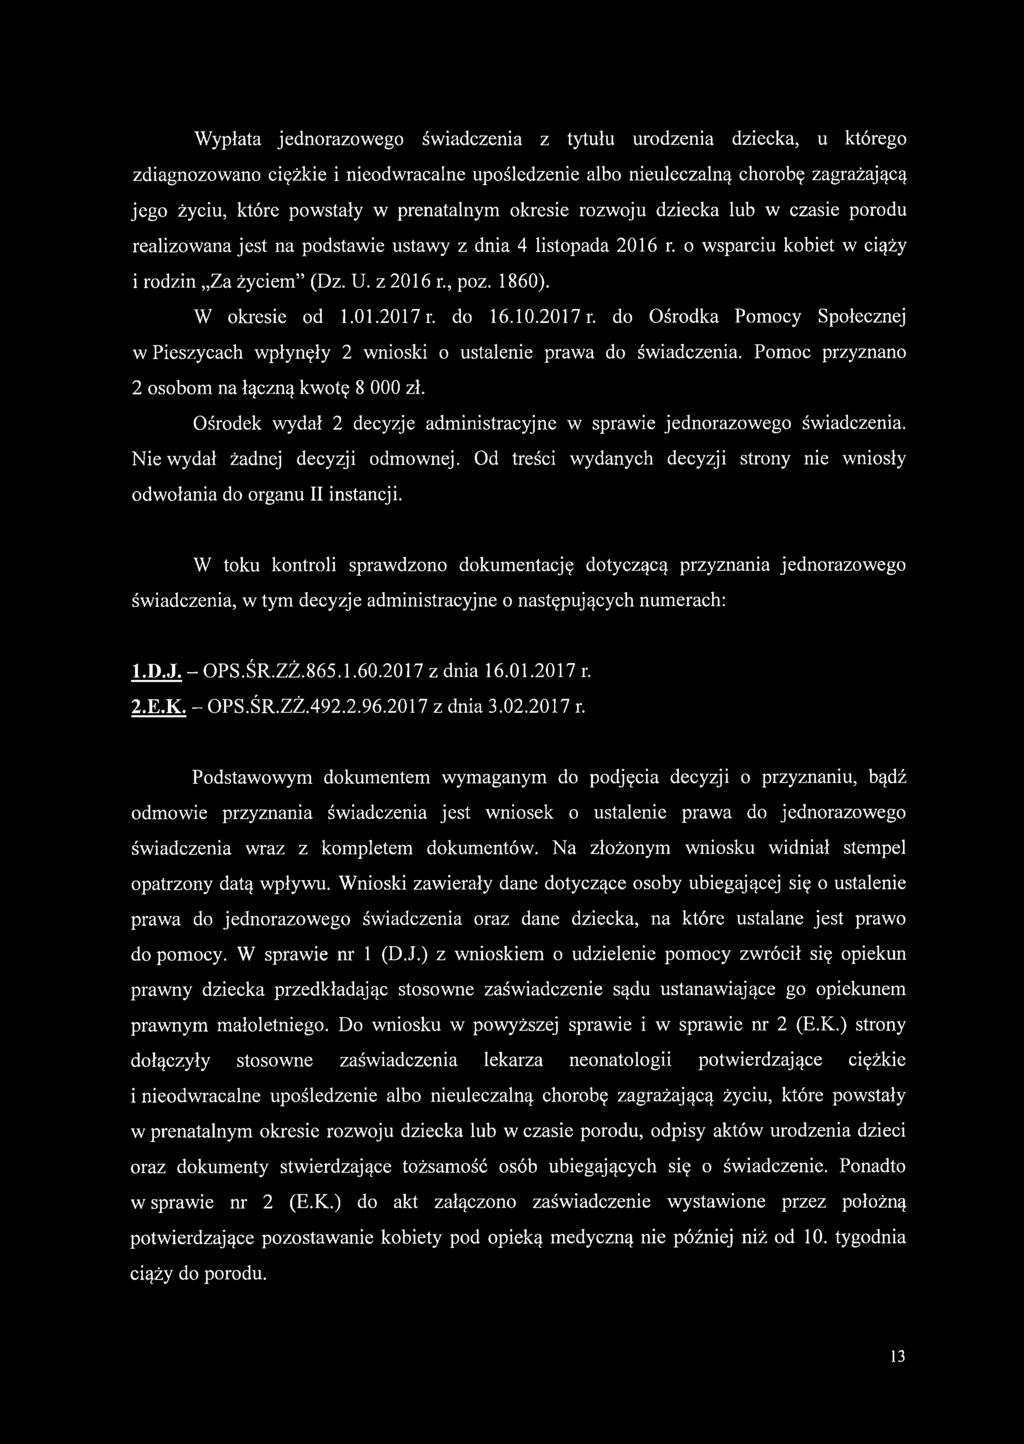 W okresie od 1.01.2017 r. do 16.10.2017 r. do Ośrodka Pomocy Społecznej w Pieszycach wpłynęły 2 wnioski o ustalenie prawa do świadczenia. Pomoc przyznano 2 osobom na łączną kwotę 8 000 zł.